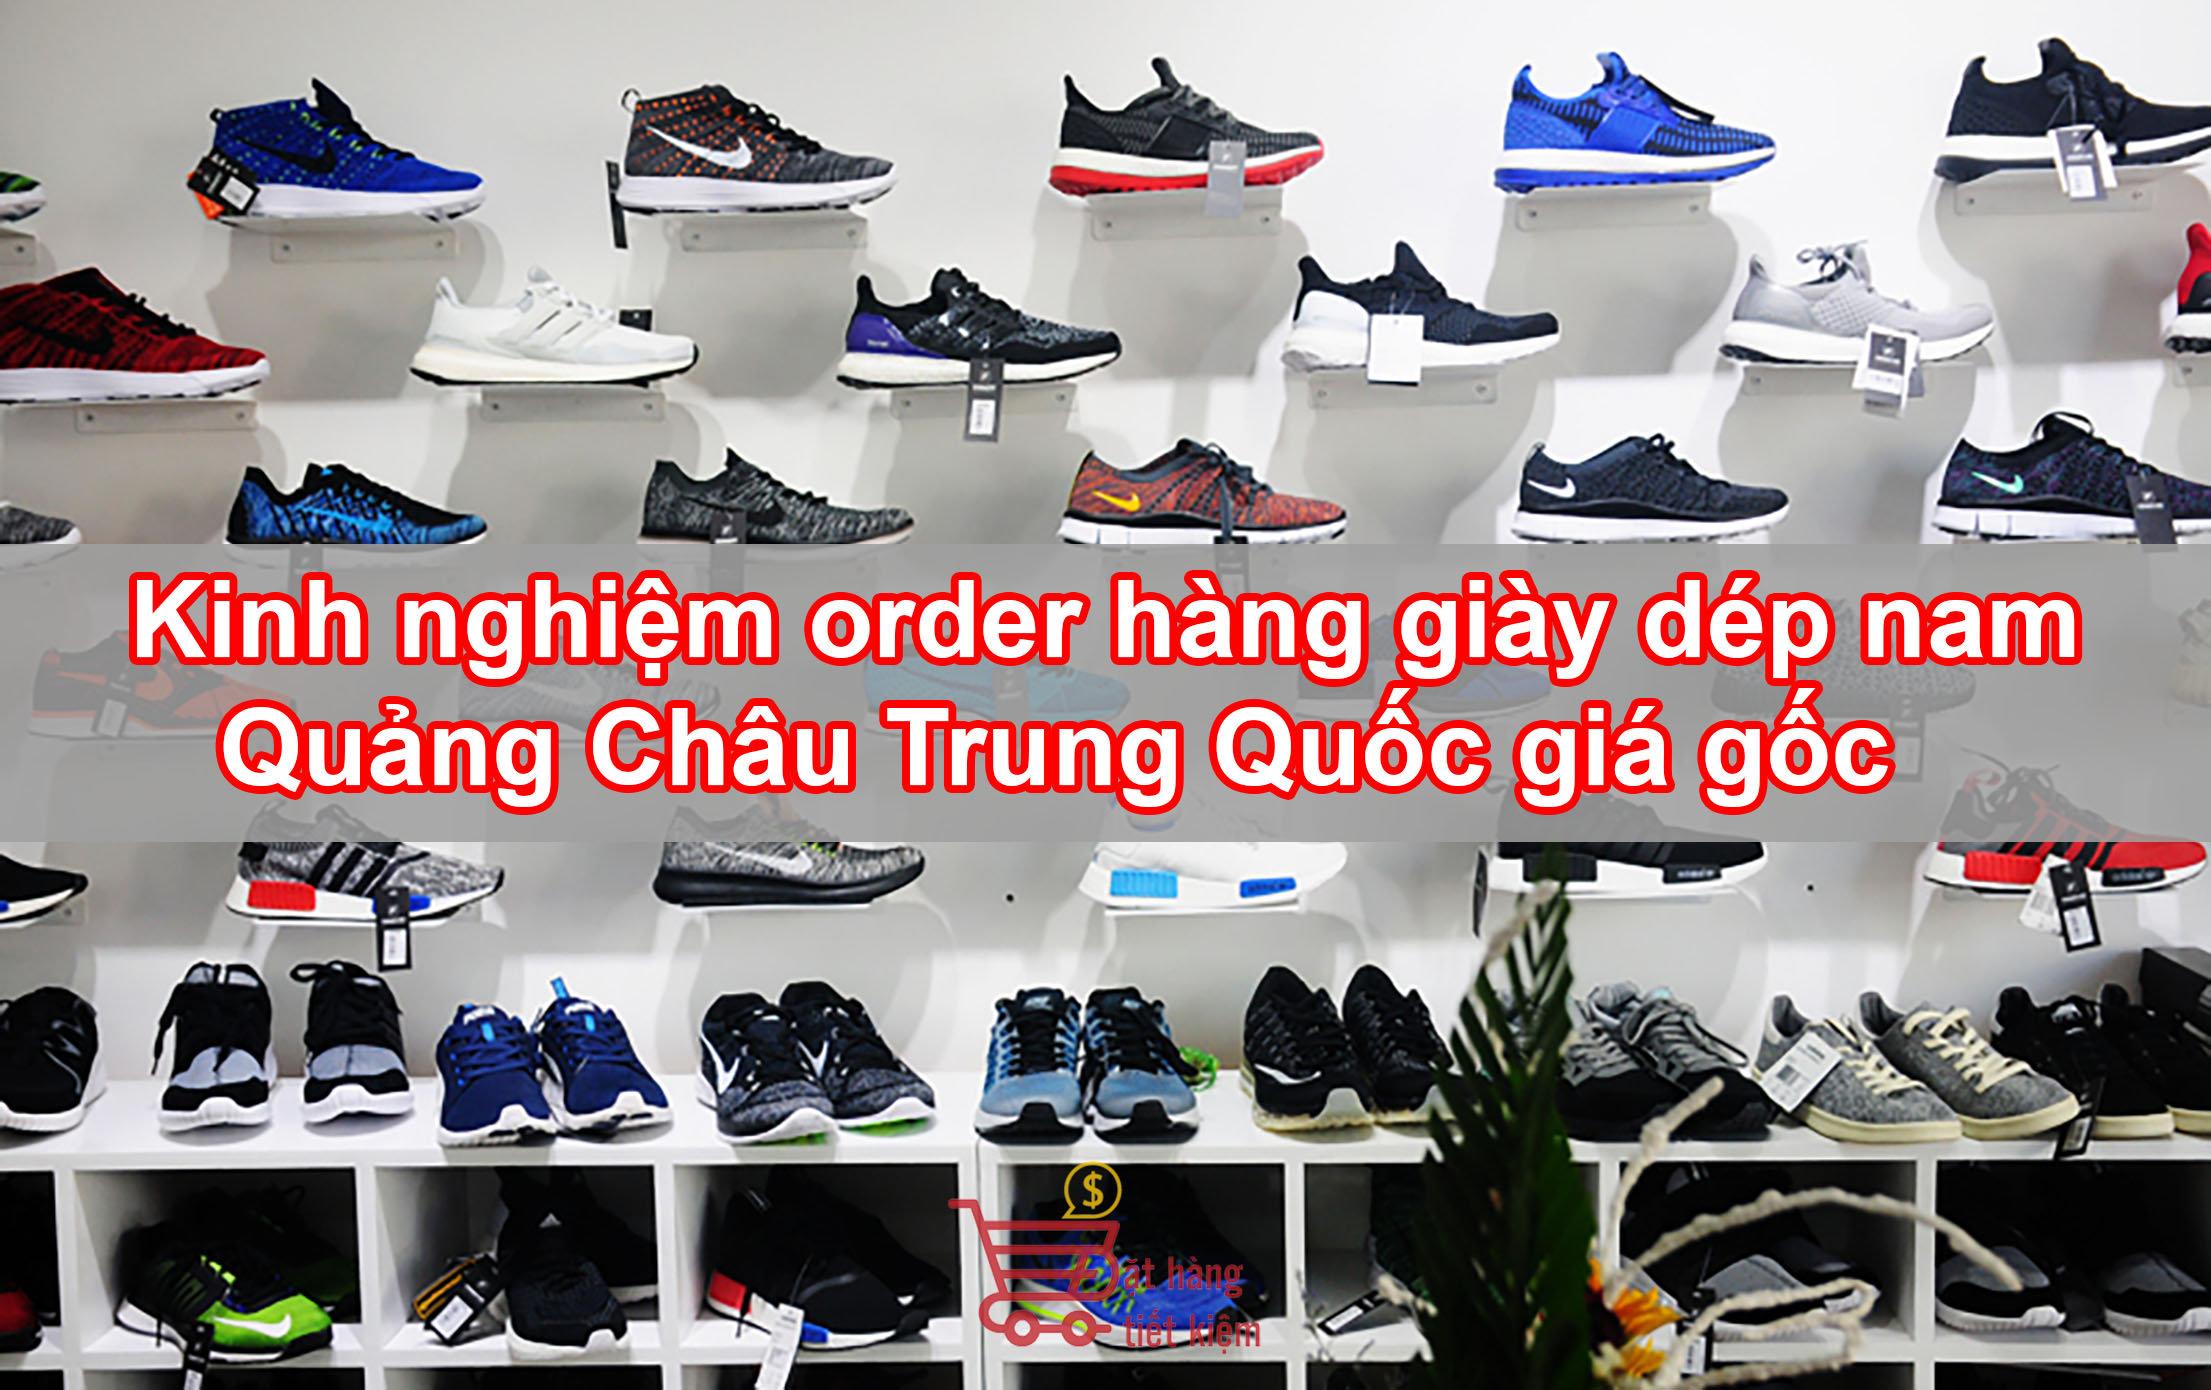 Kinh nghiệm order hàng giày dép nam Quảng Châu Trung Quốc giá gốc